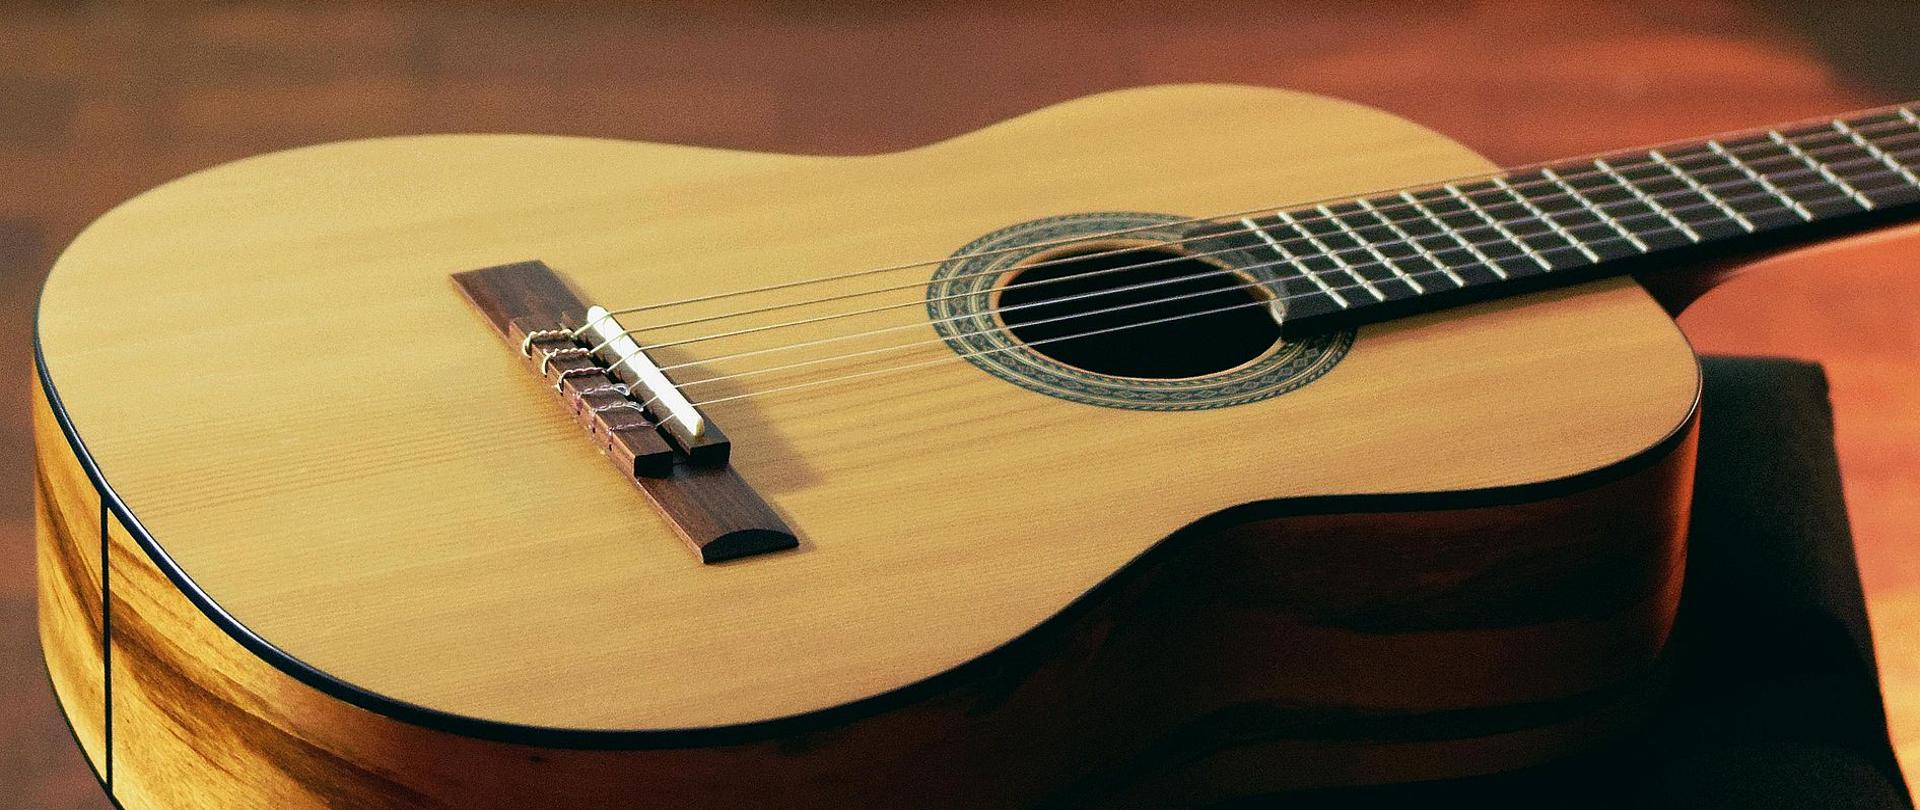 Zdjęcie przedstawia gitarę klasyczną koloru jasnego leżącą na podłodze.